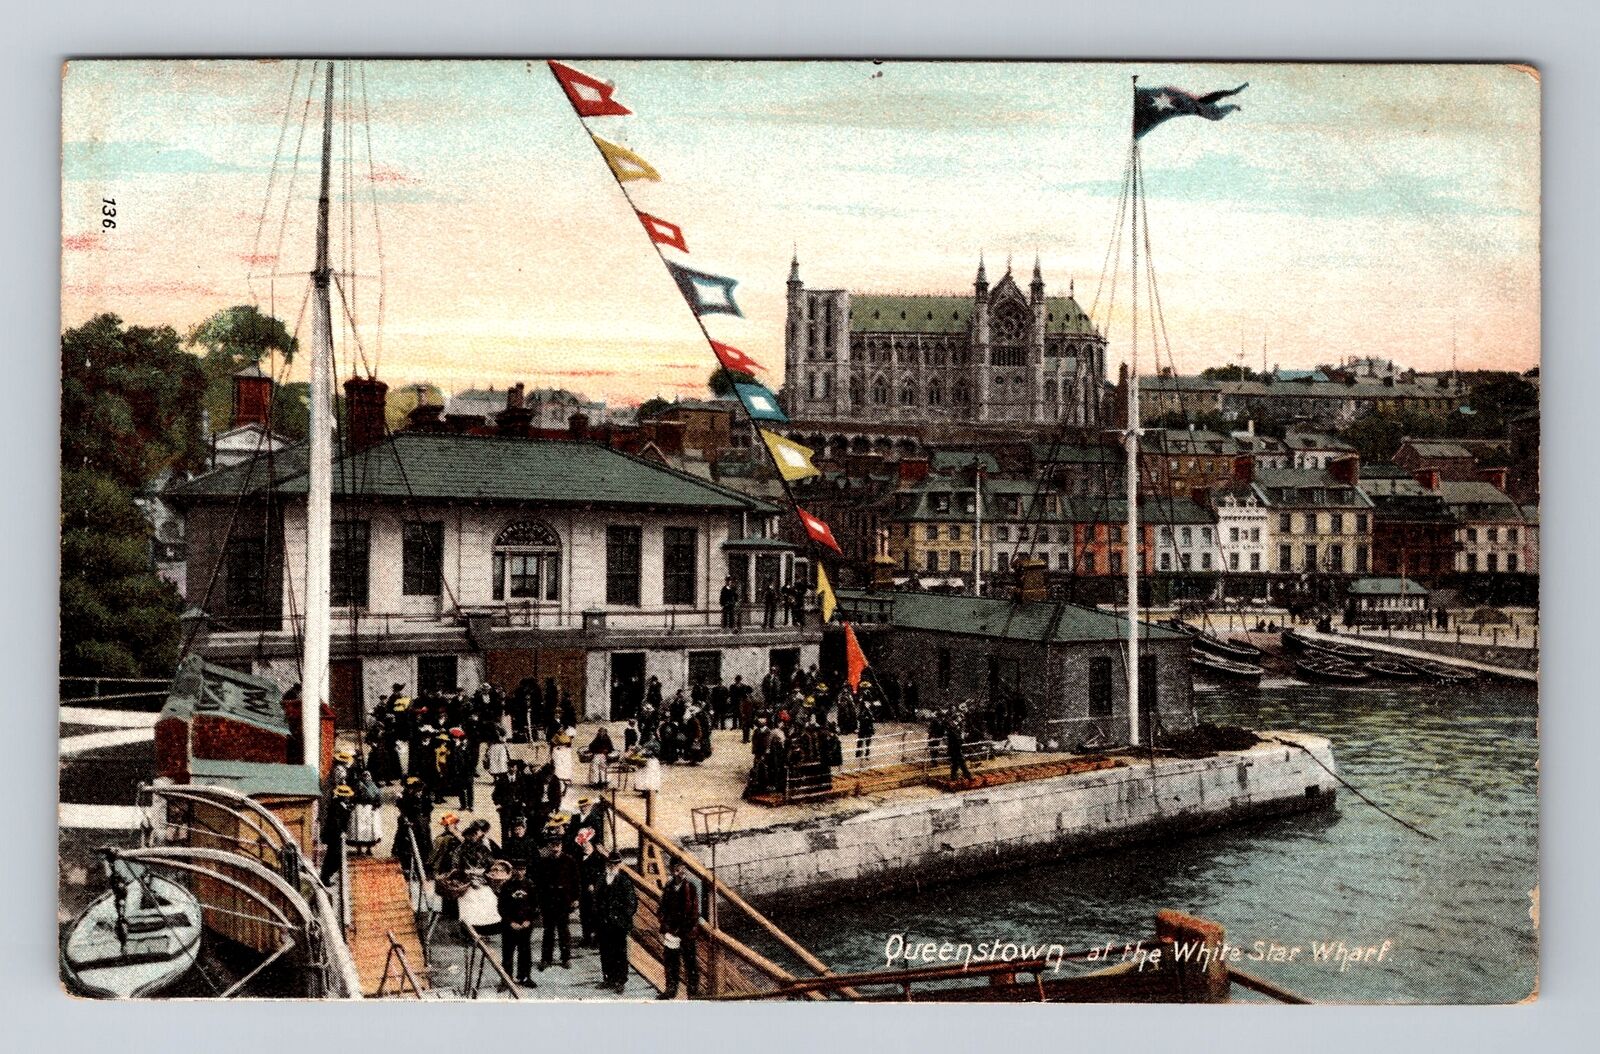 Queenstown-New Zealand, Queenstown White Star Wharf, Antique Vintage Postcard